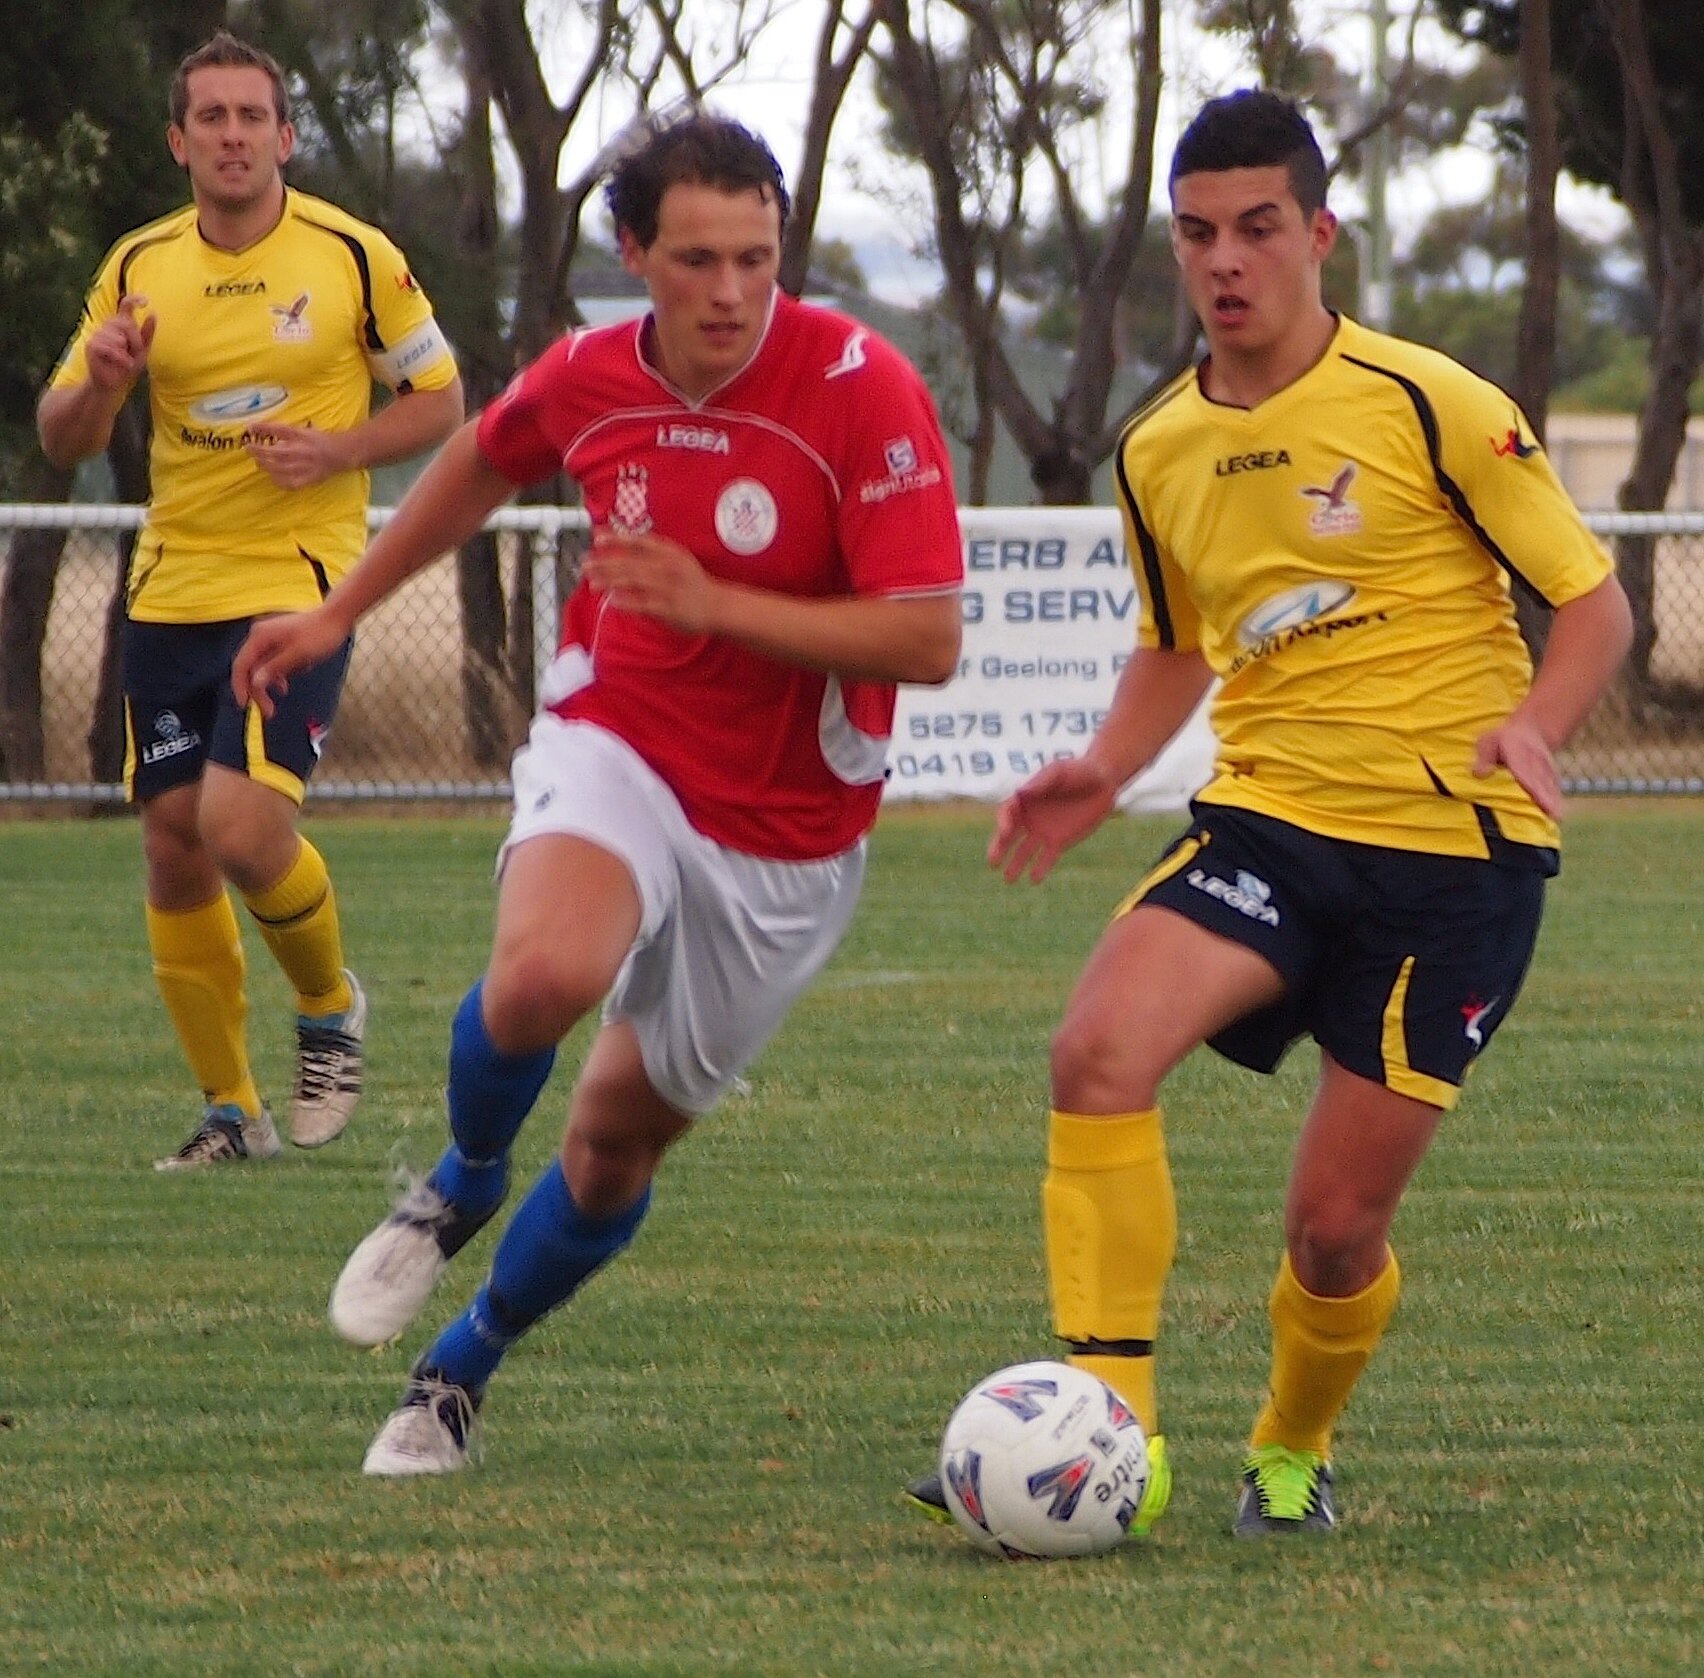 Diversity Cup kicks off in Geelong